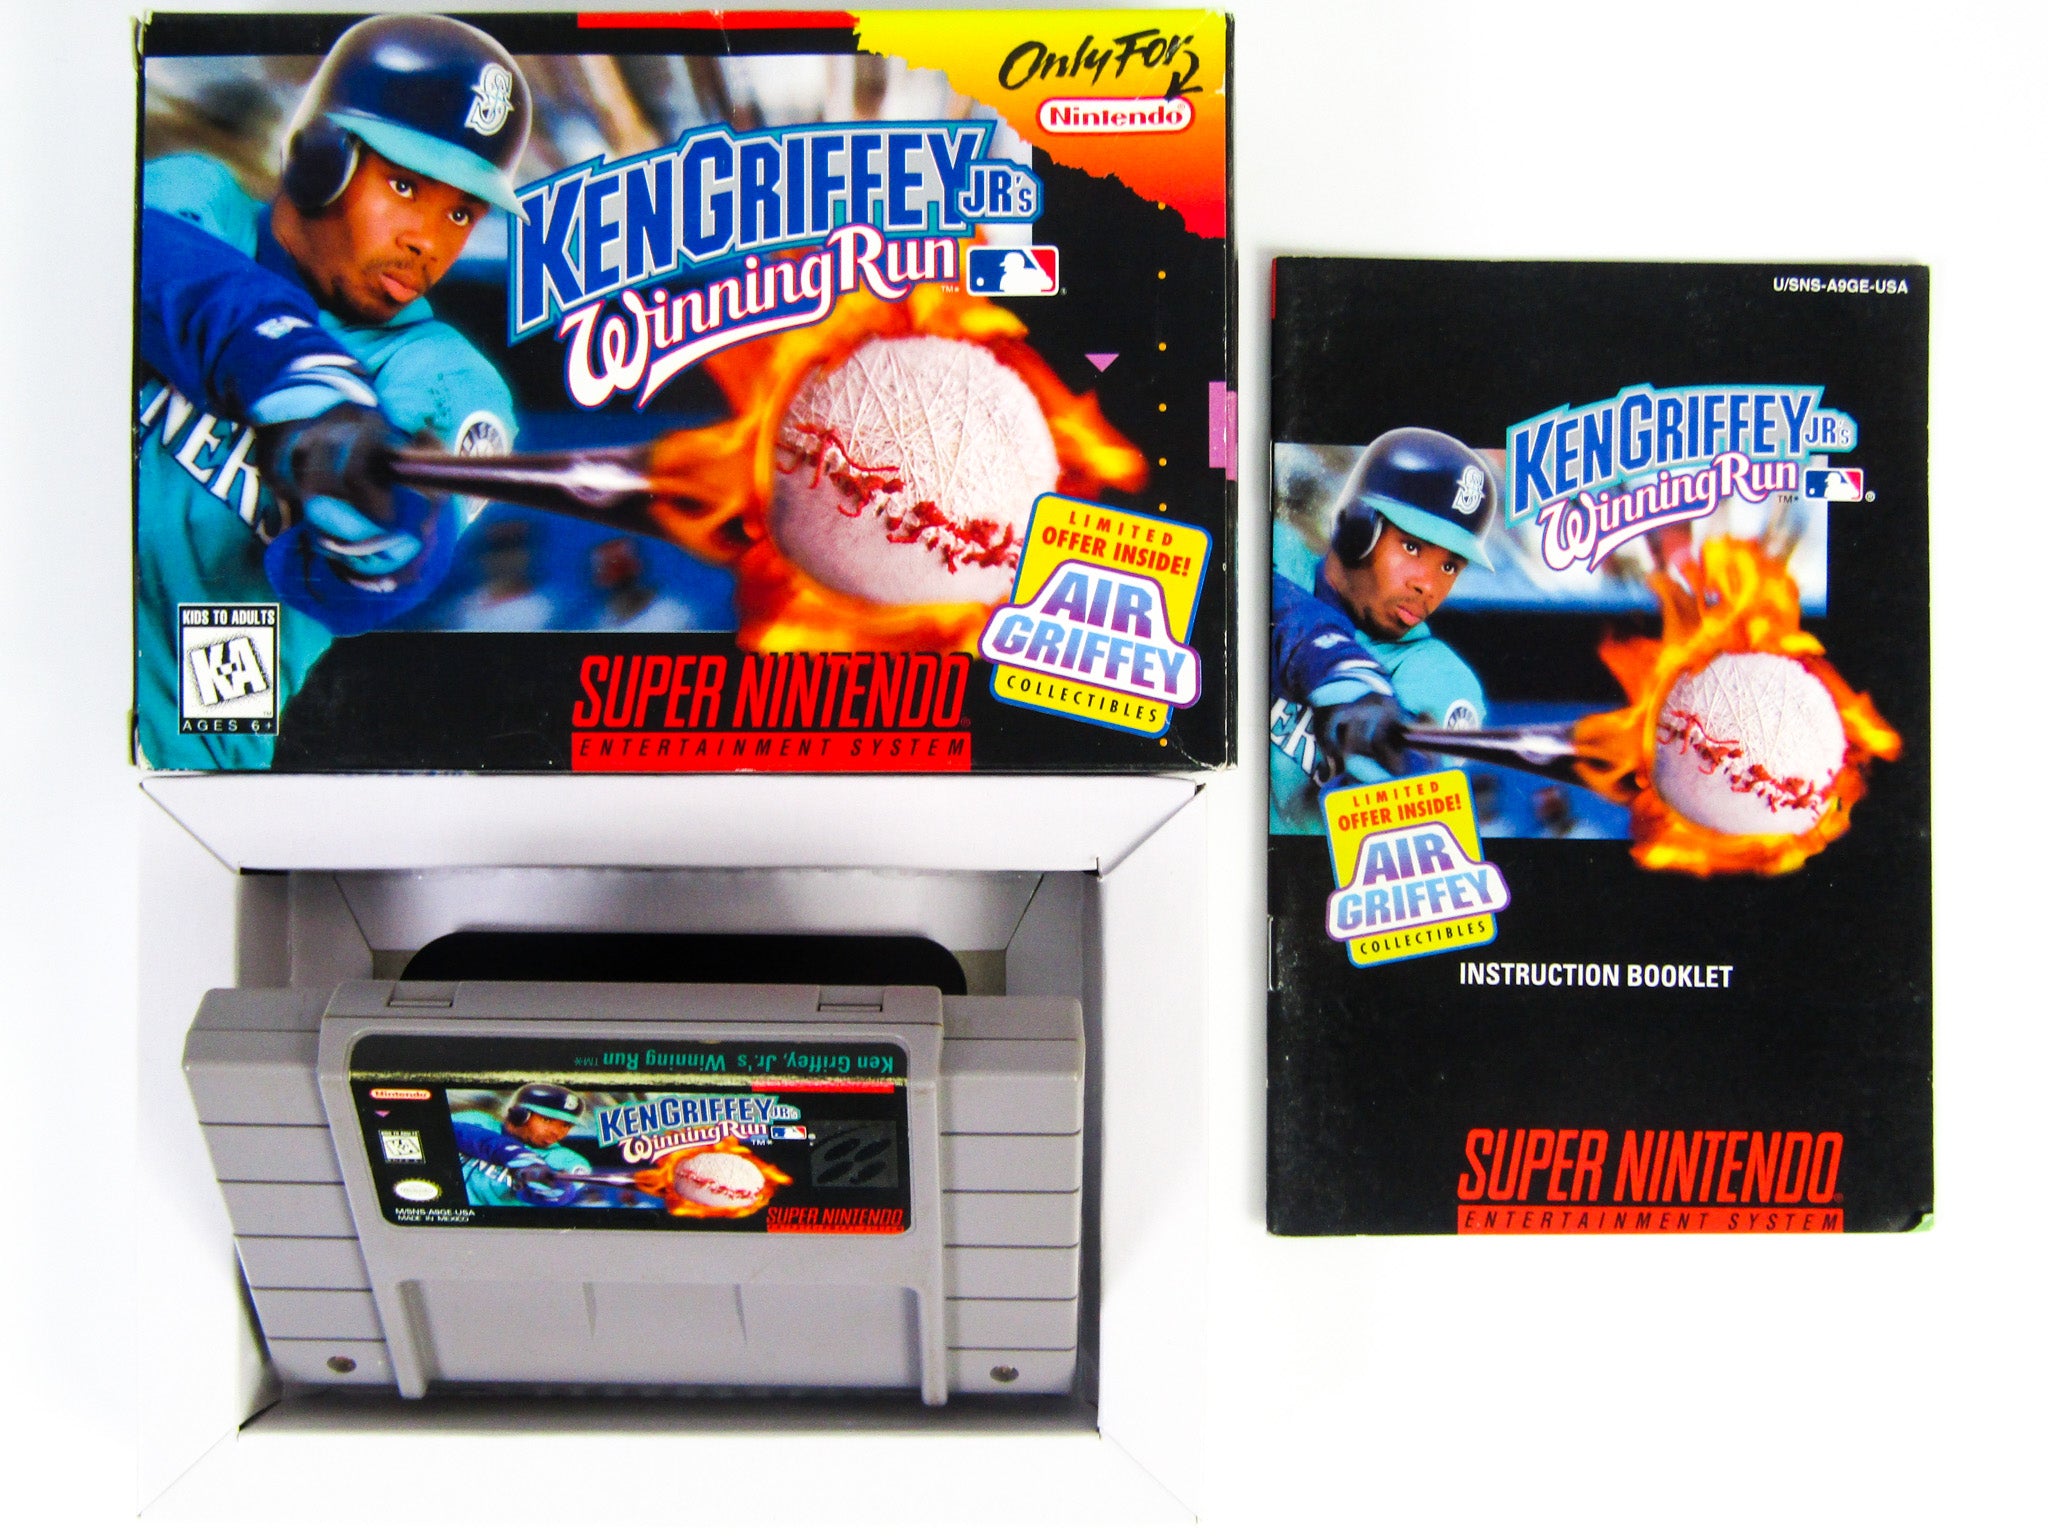 Ken Griffey Jr's Winning Run (Super Nintendo / SNES) – RetroMTL